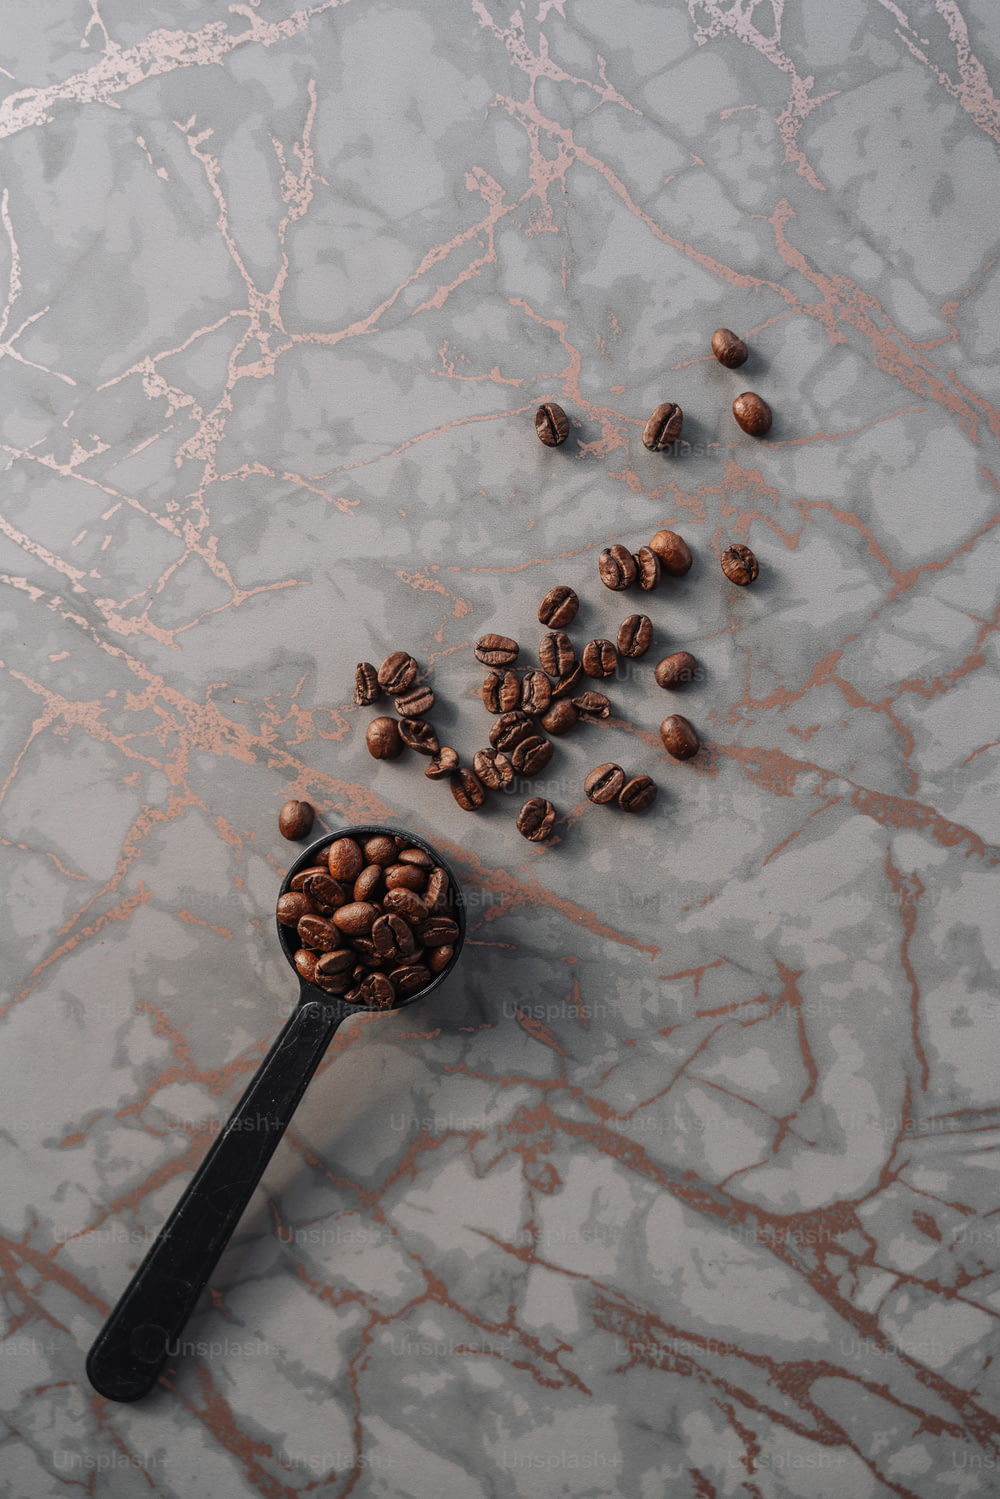 un cucchiaio pieno di chicchi di caffè su una superficie di marmo